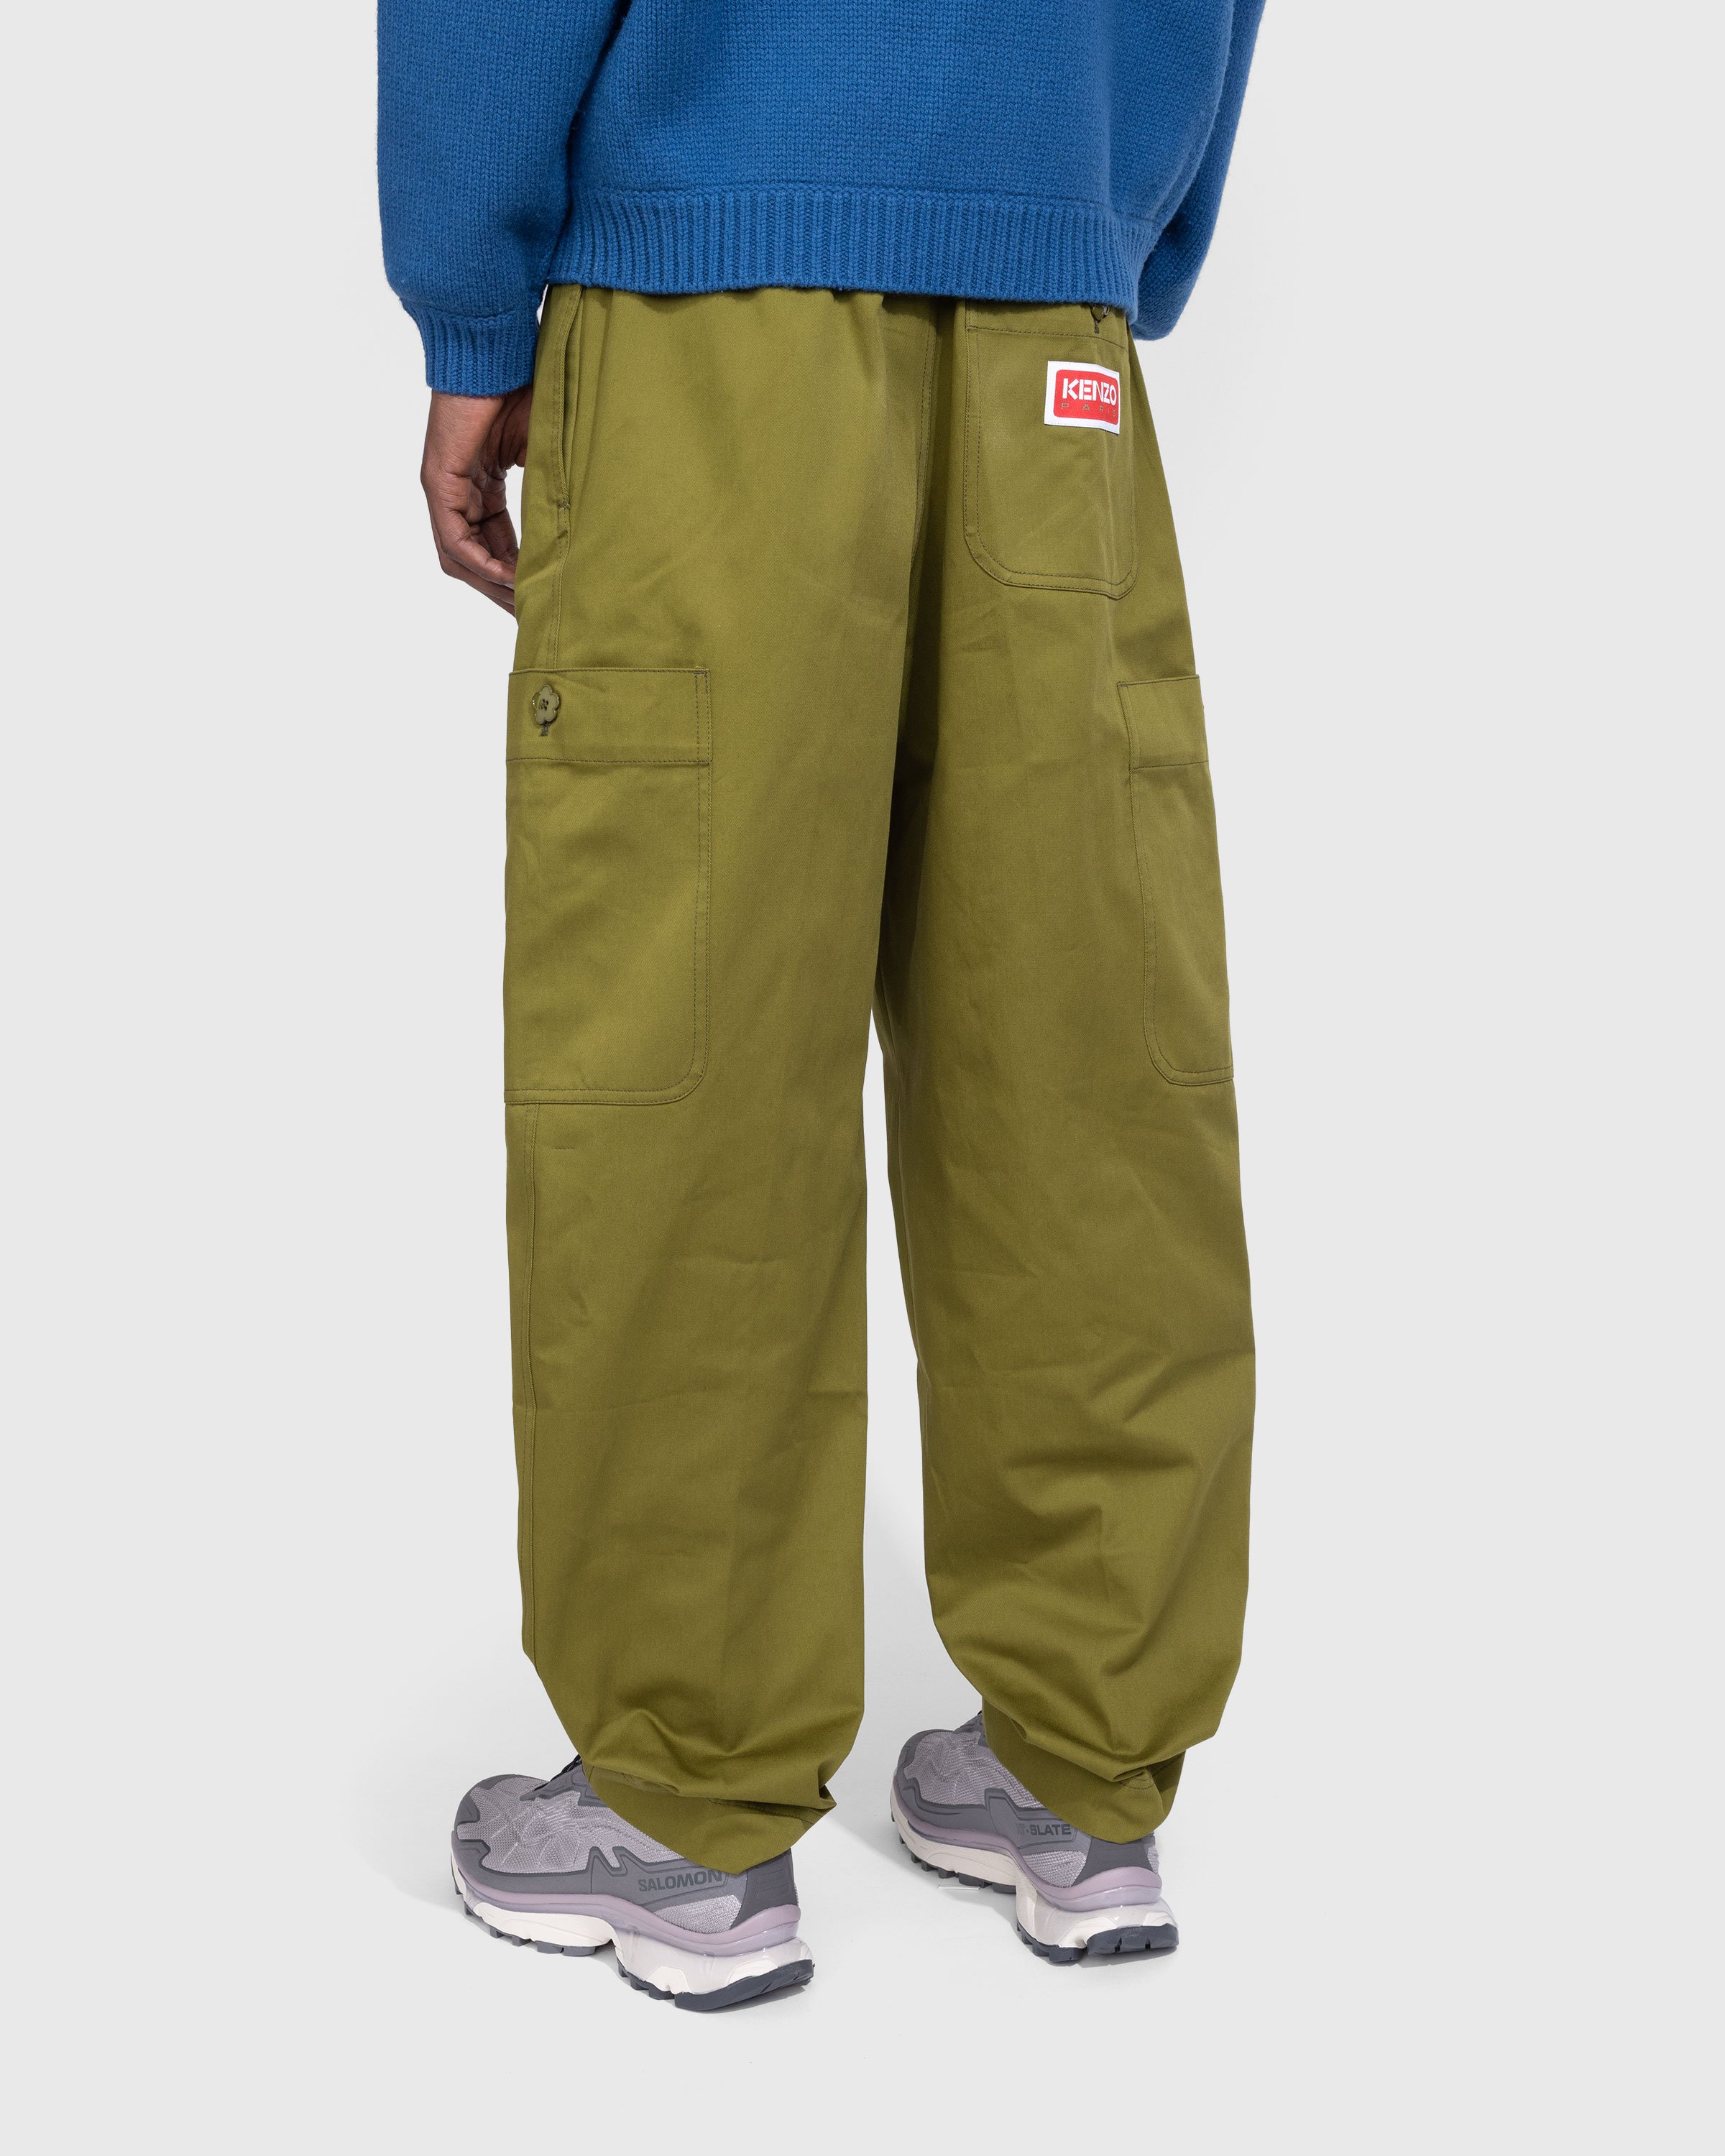 Kenzo - Cargo Jogpant - Clothing - Green - Image 3